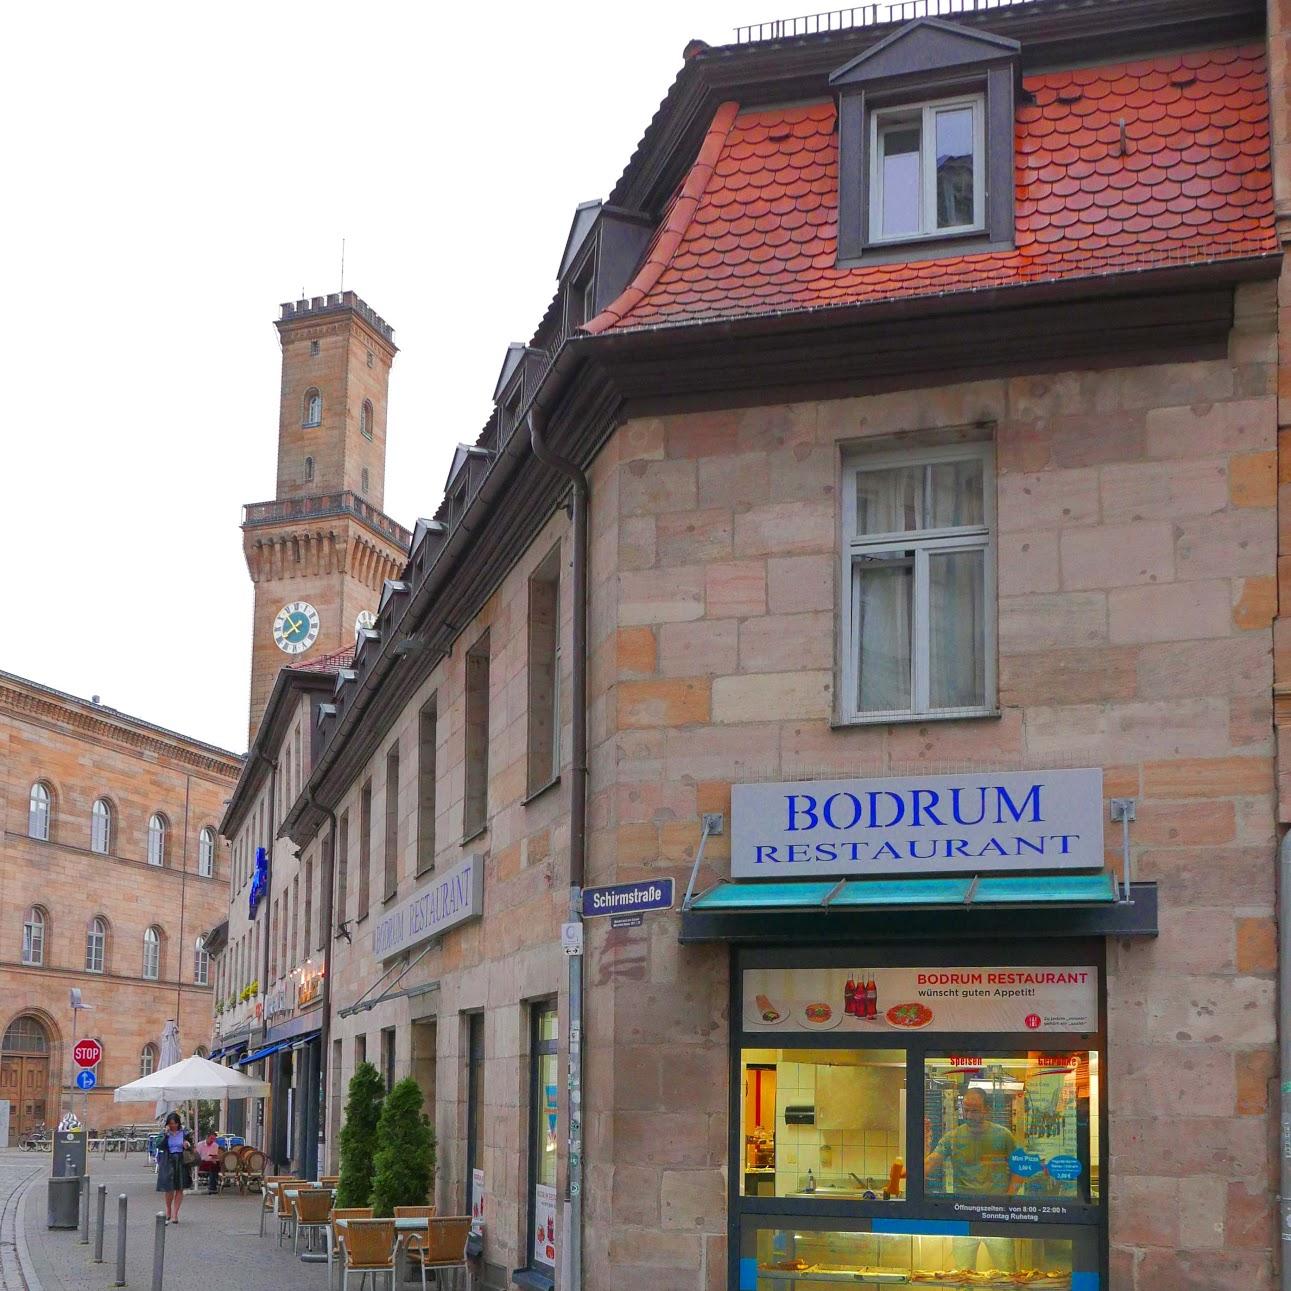 Restaurant "Bodrum Restaurant" in Fürth